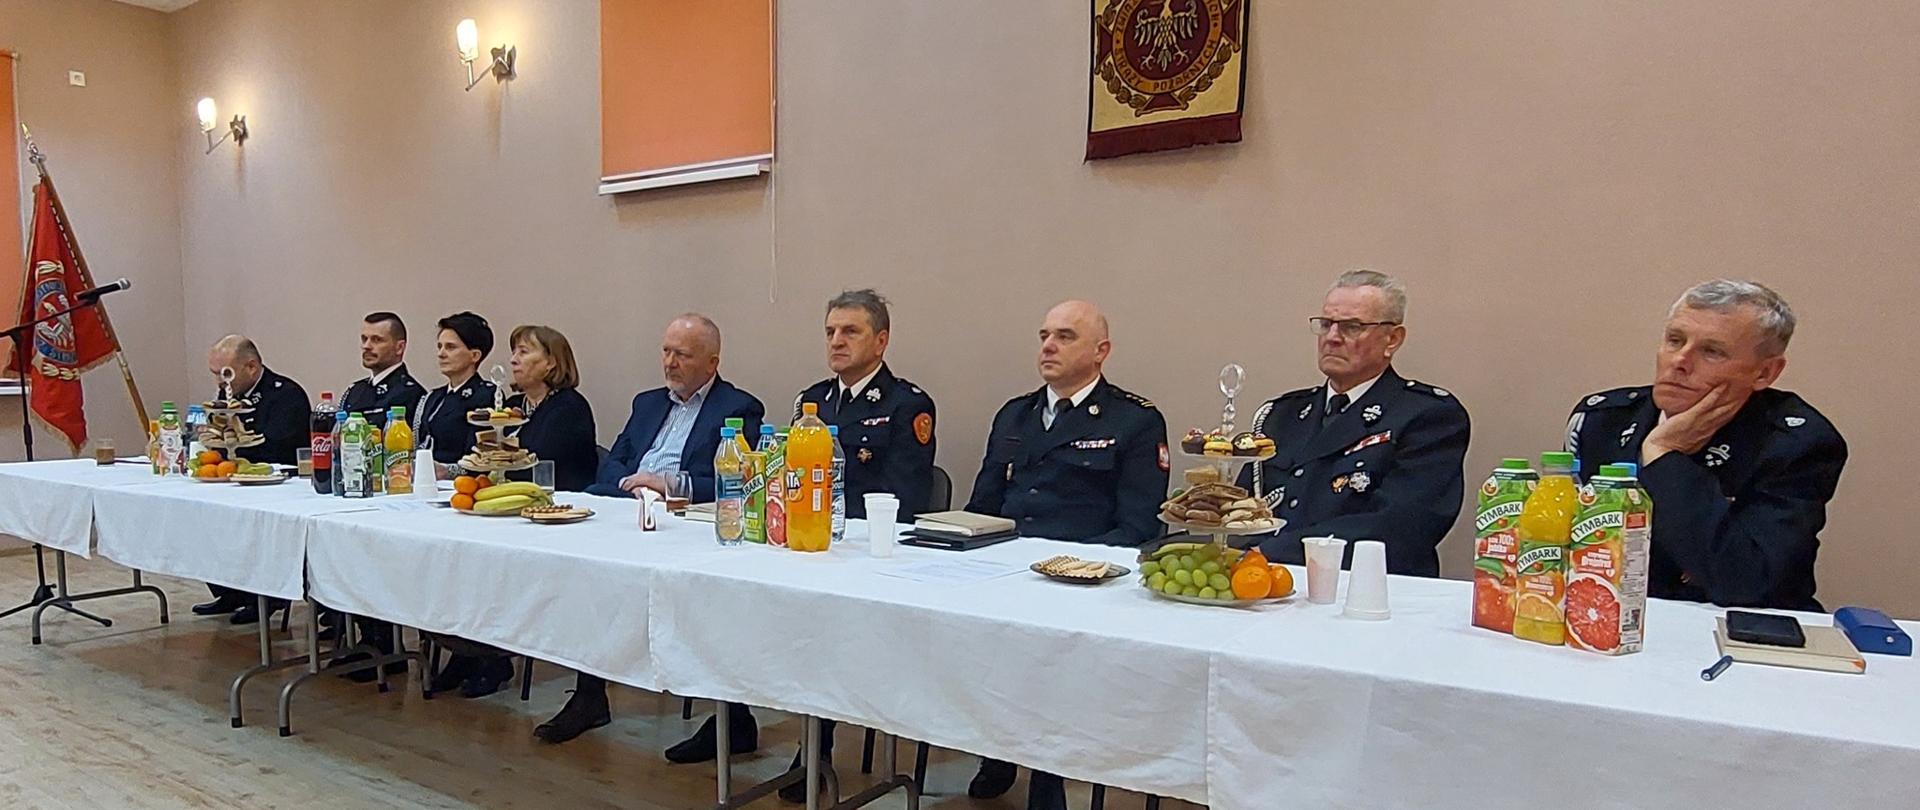 Na zdjęciu przy stole prezydialnym siedzą: poseł, przedstawiciele władz samorządowych, komendant powiatowy PSP Limanowa, władze powiatowe i gminne oraz jednostki związku OSP RP 